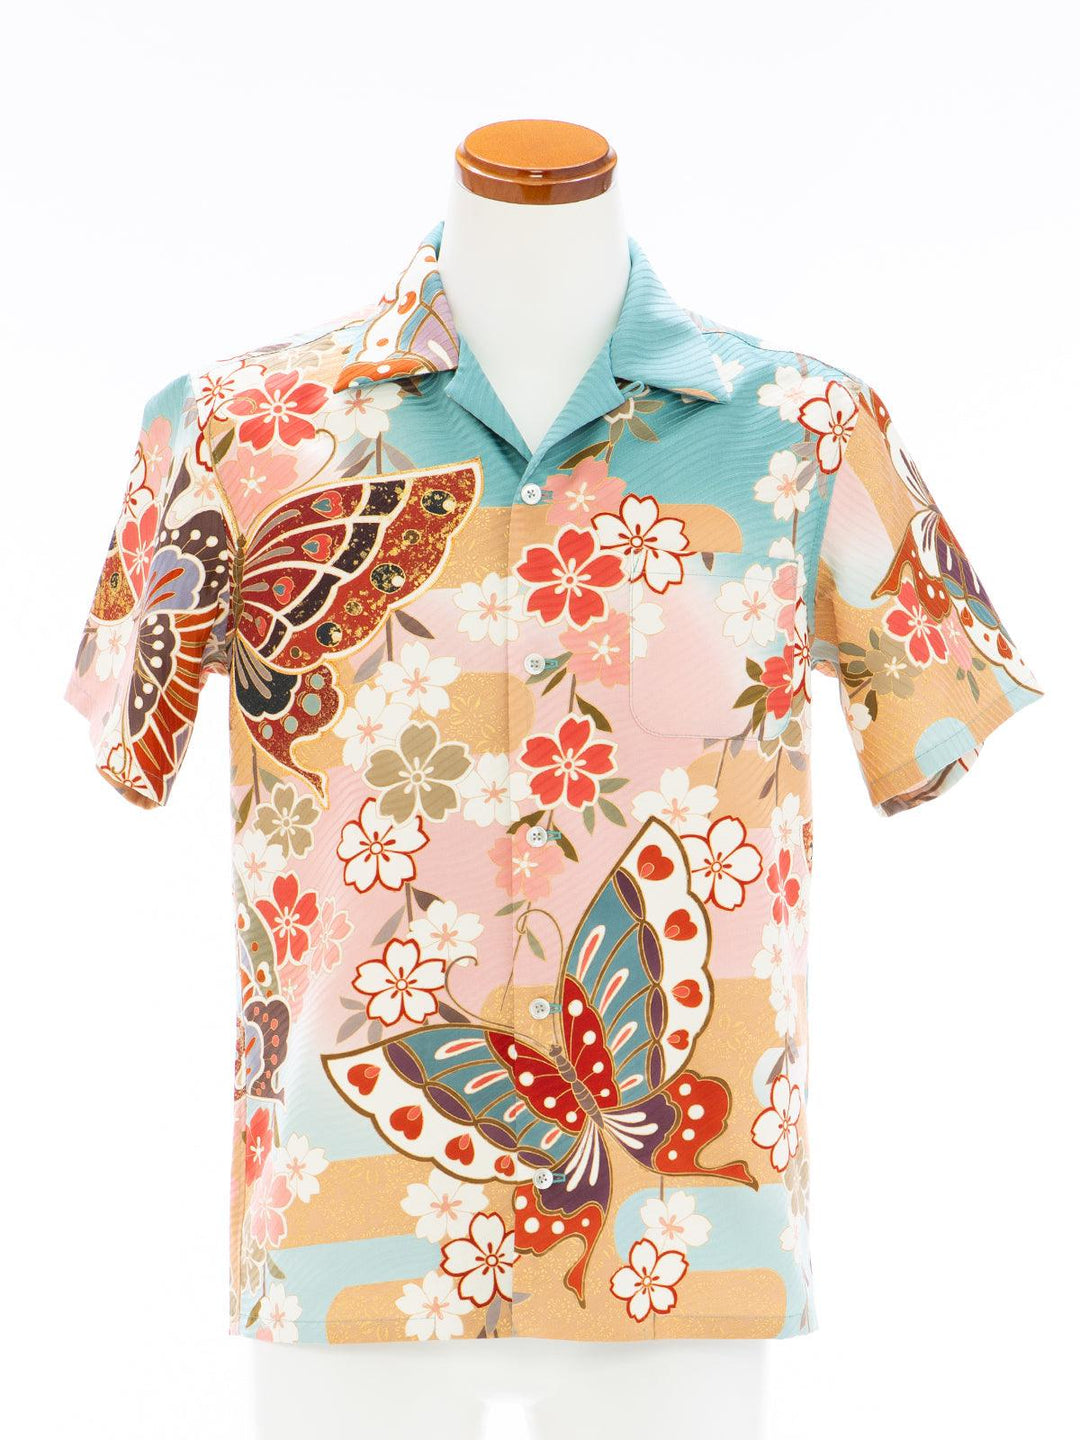 着物アロハシャツ「優美に舞う蝶々A」AH100206 - 着物アロハシャツ専門店｜KIMONO-CYCLE